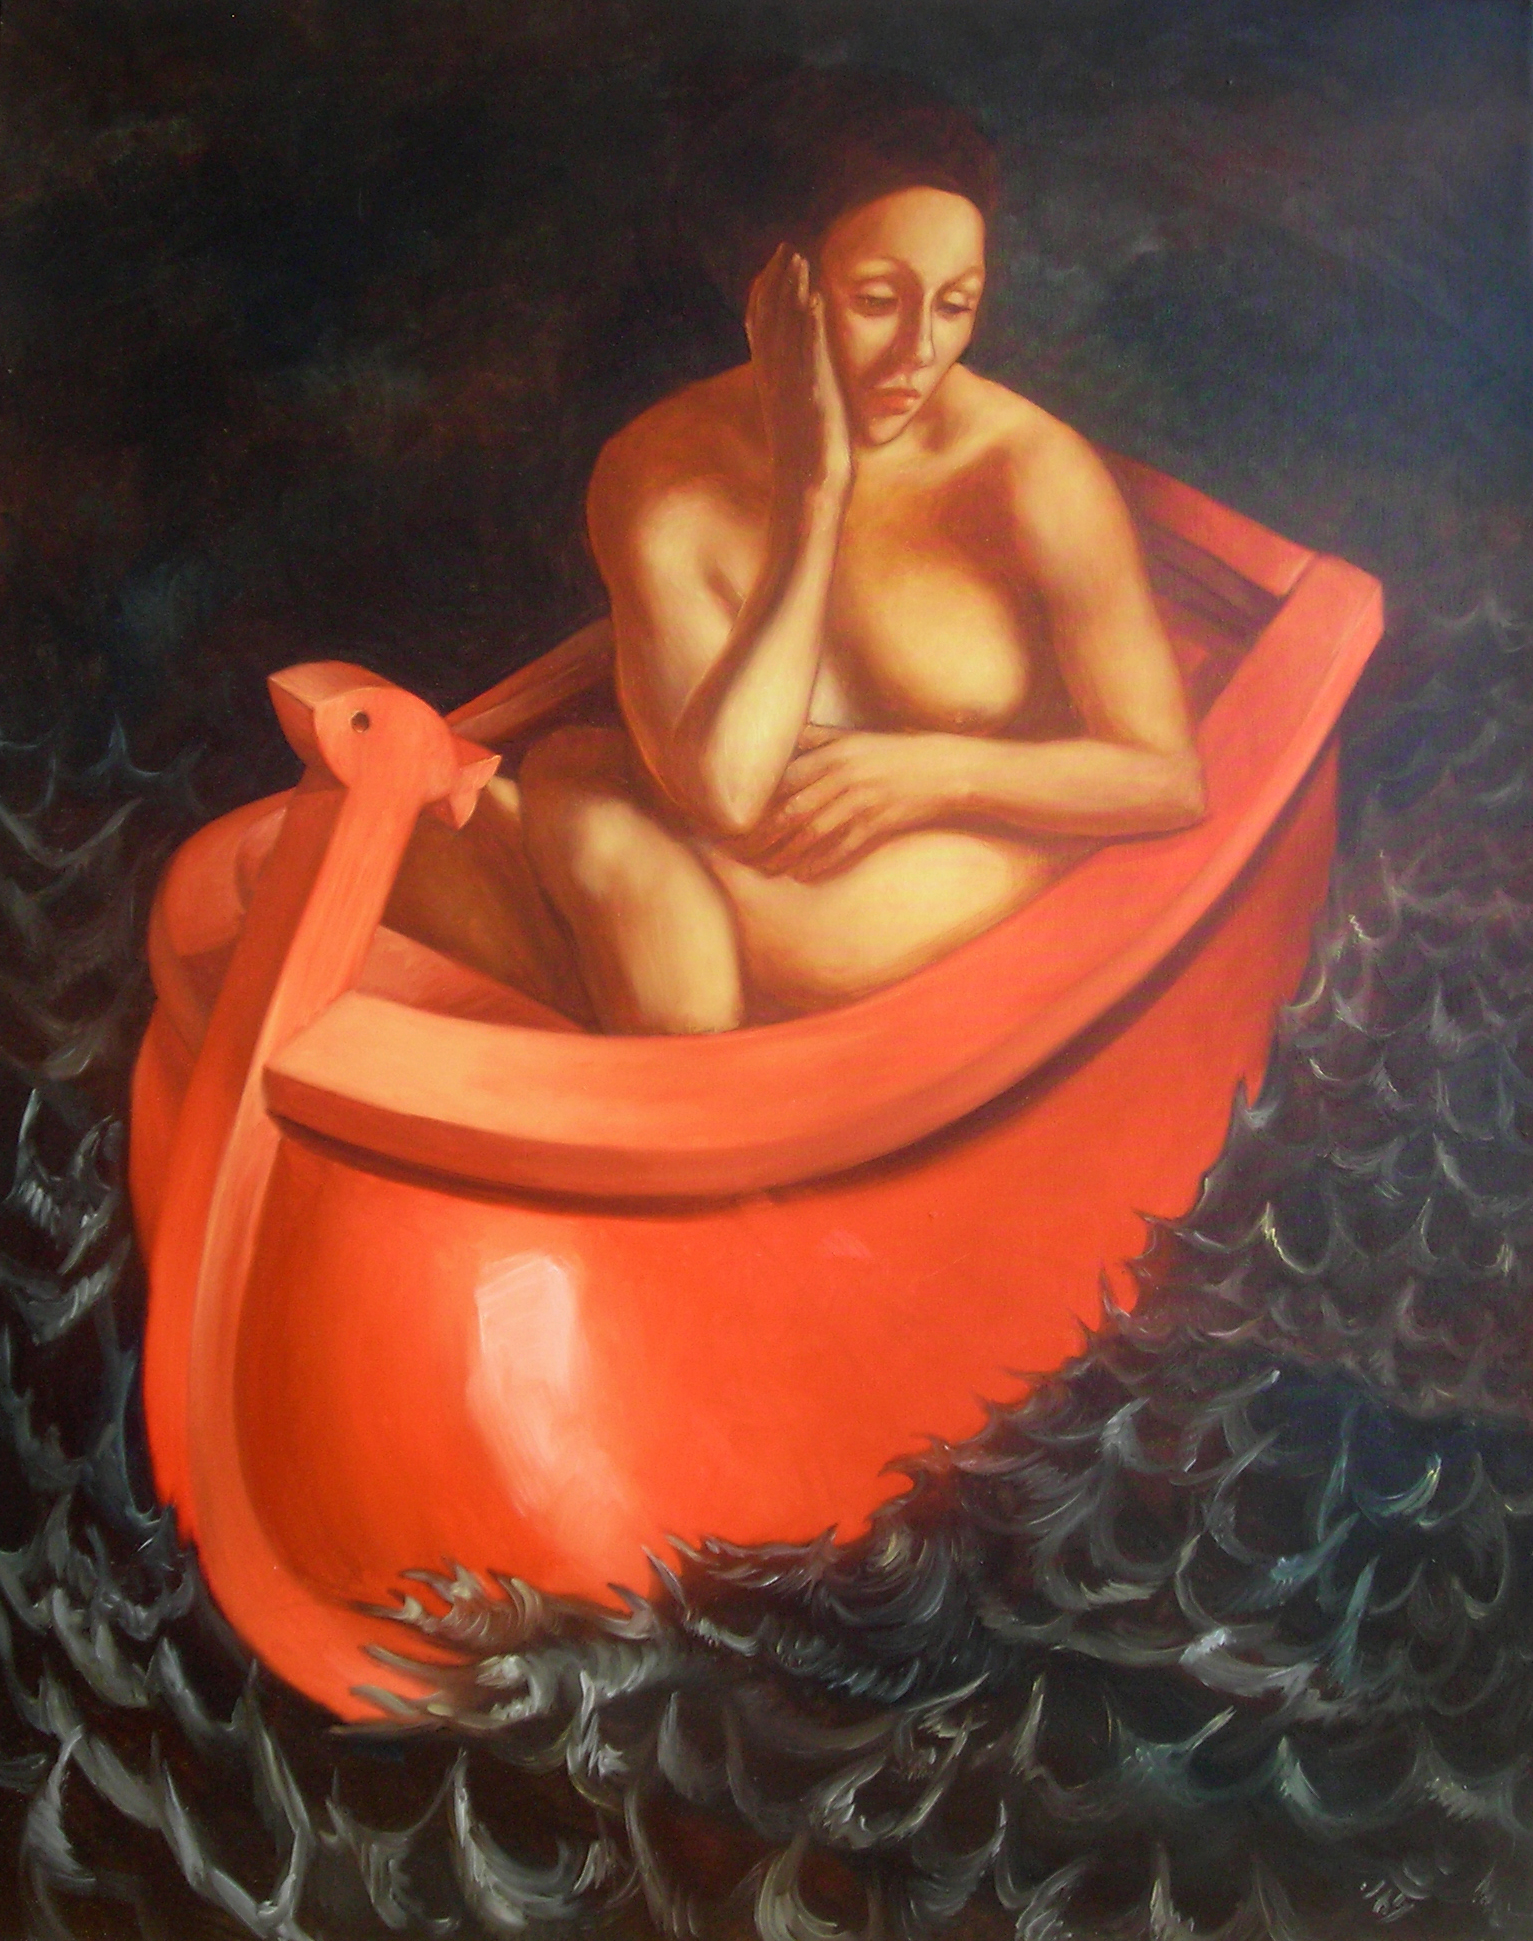 Une femme nue dans une barque rouge.